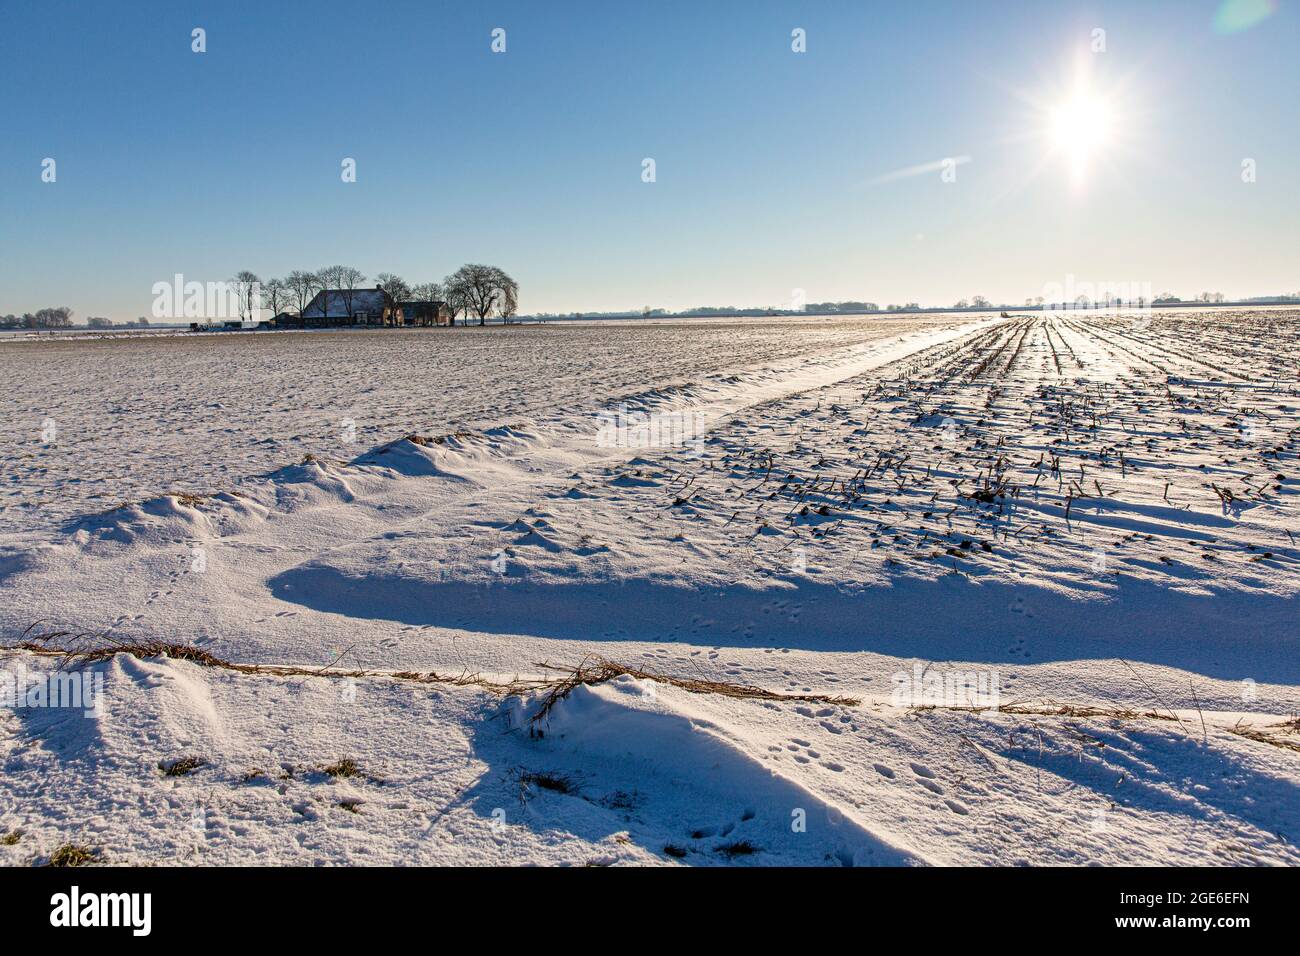 The Netherlands, Genemuiden. Farm in IJssel delta, called Kampereiland. Winter, snow. Stock Photo